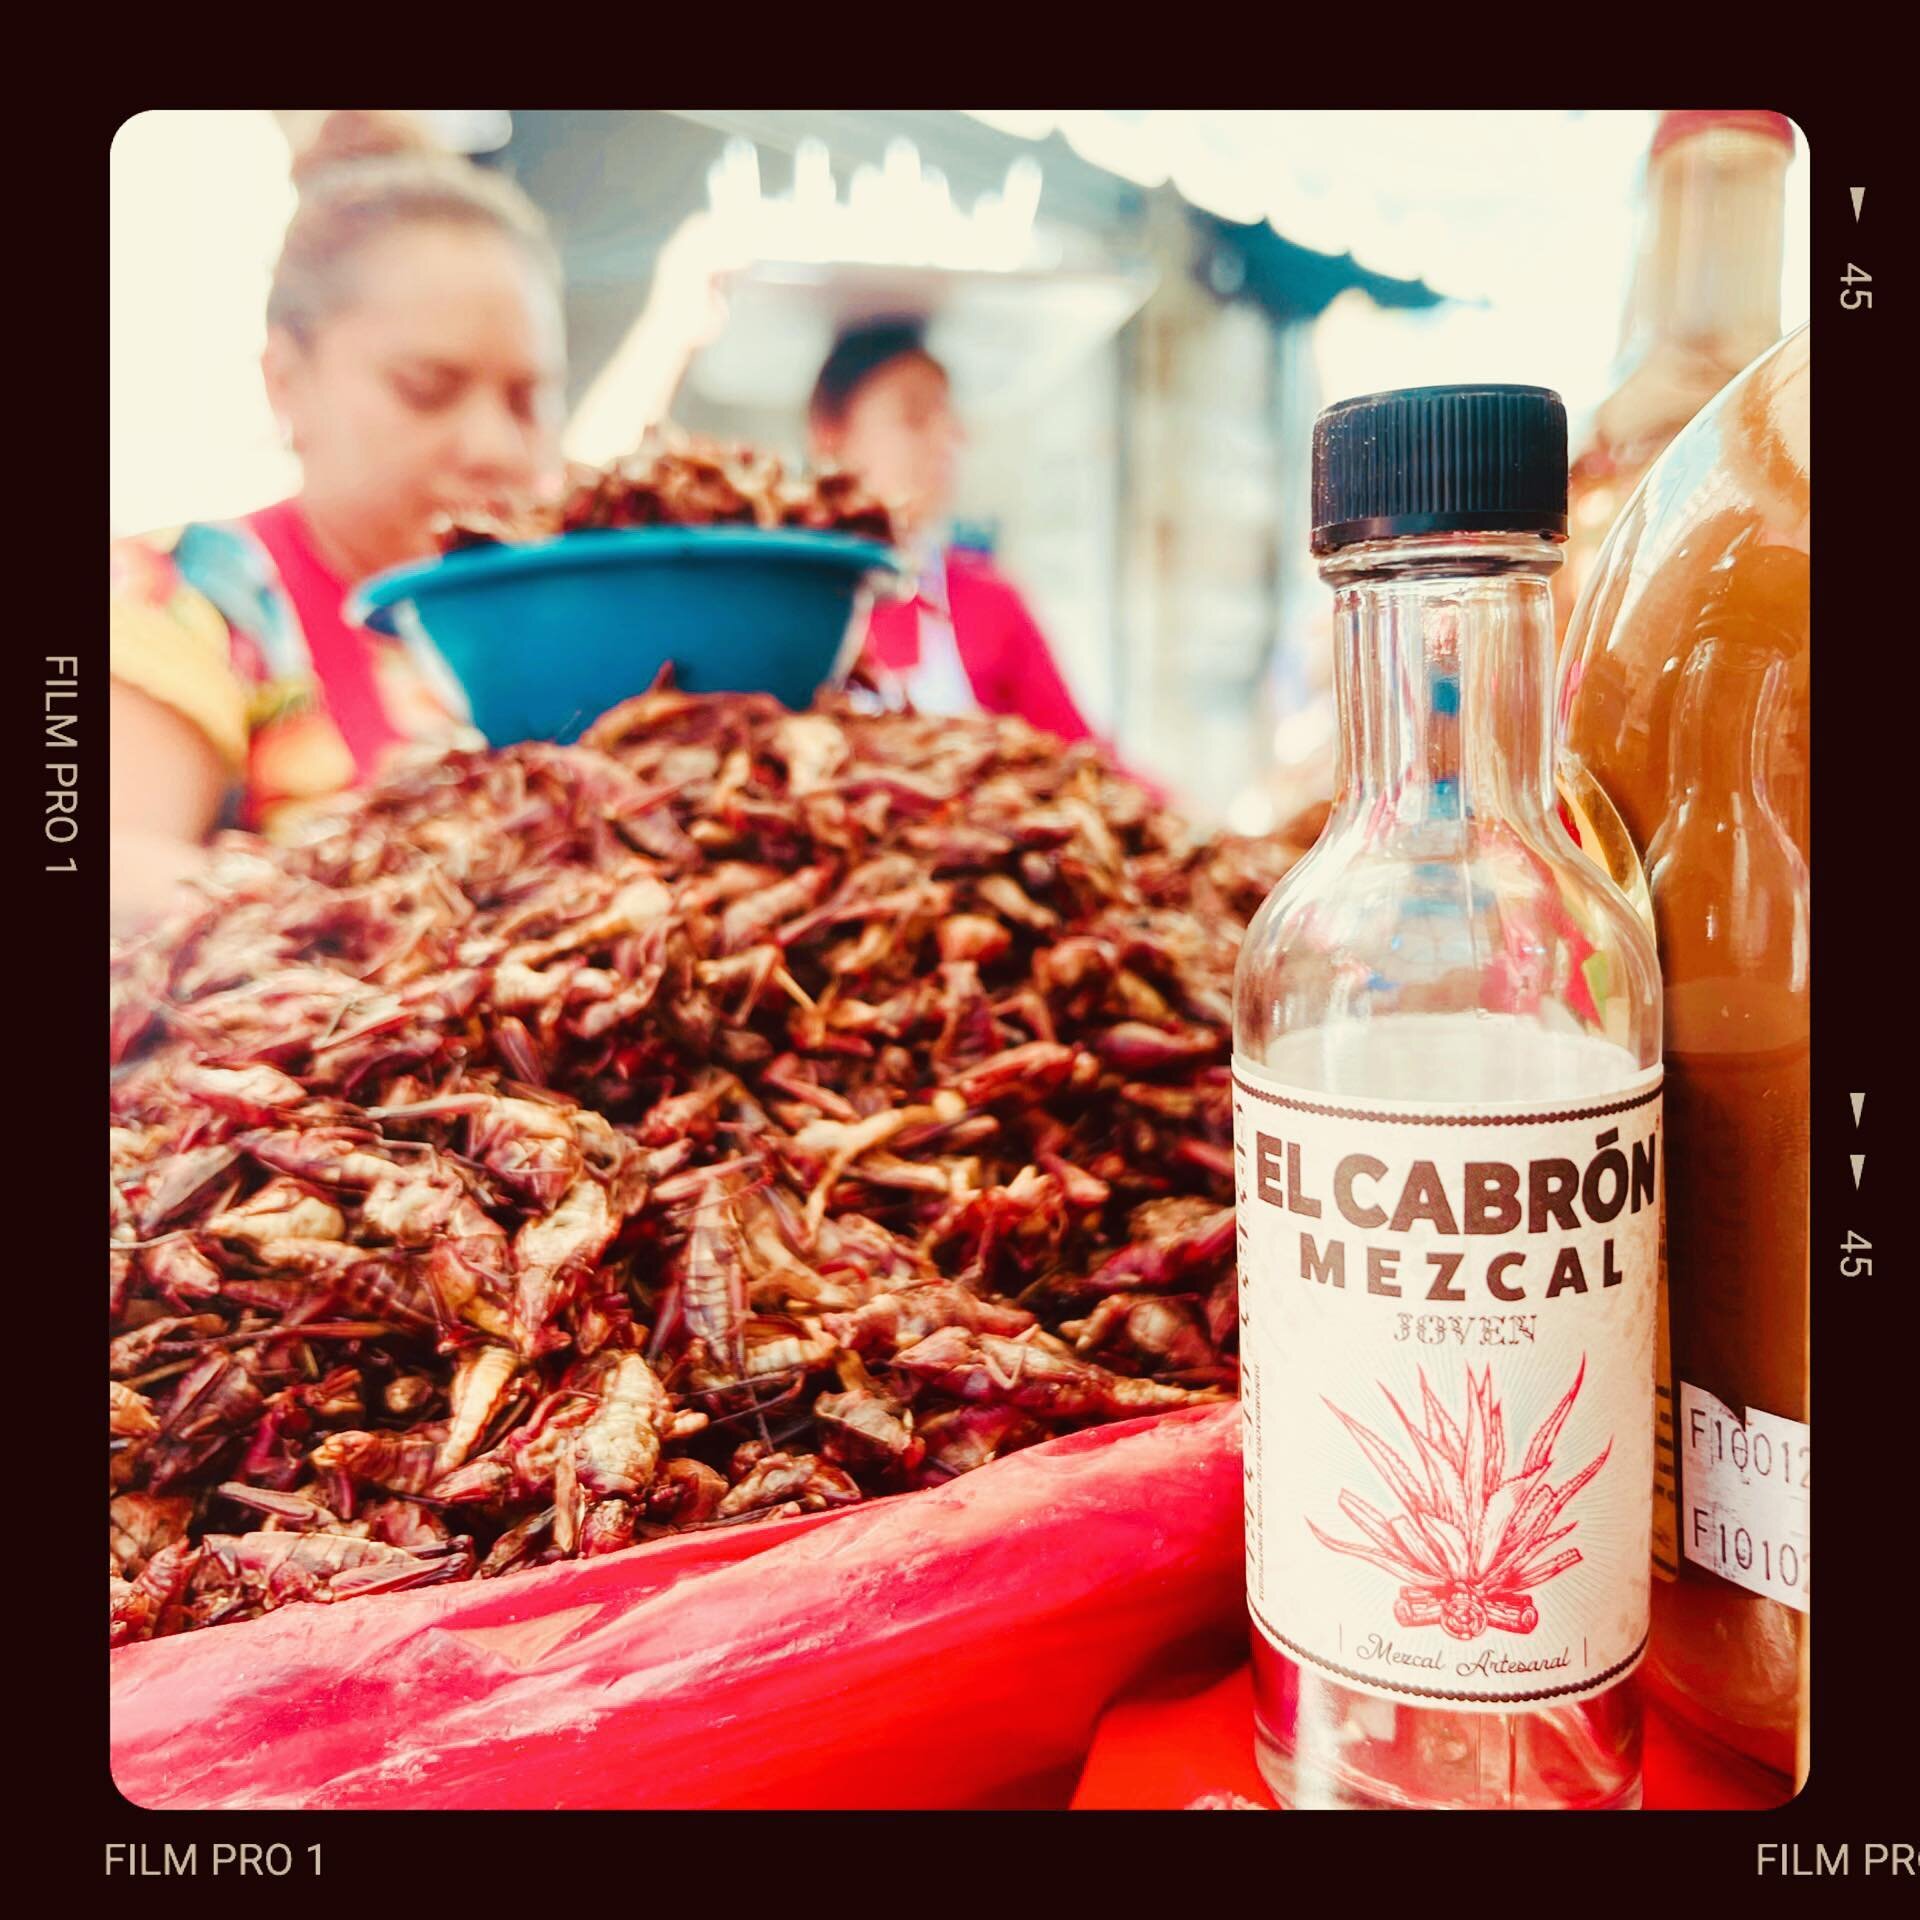 Chapulines, chile, chocolate y mezcal #ElCabron 🤤🌵🌶️🦗🍫

#SaludCabron #Mezcal #Agave #chapulines #chile #Chocolate #Tequila #LilaDowns #VivaMexico #Mexico #Oaxaca